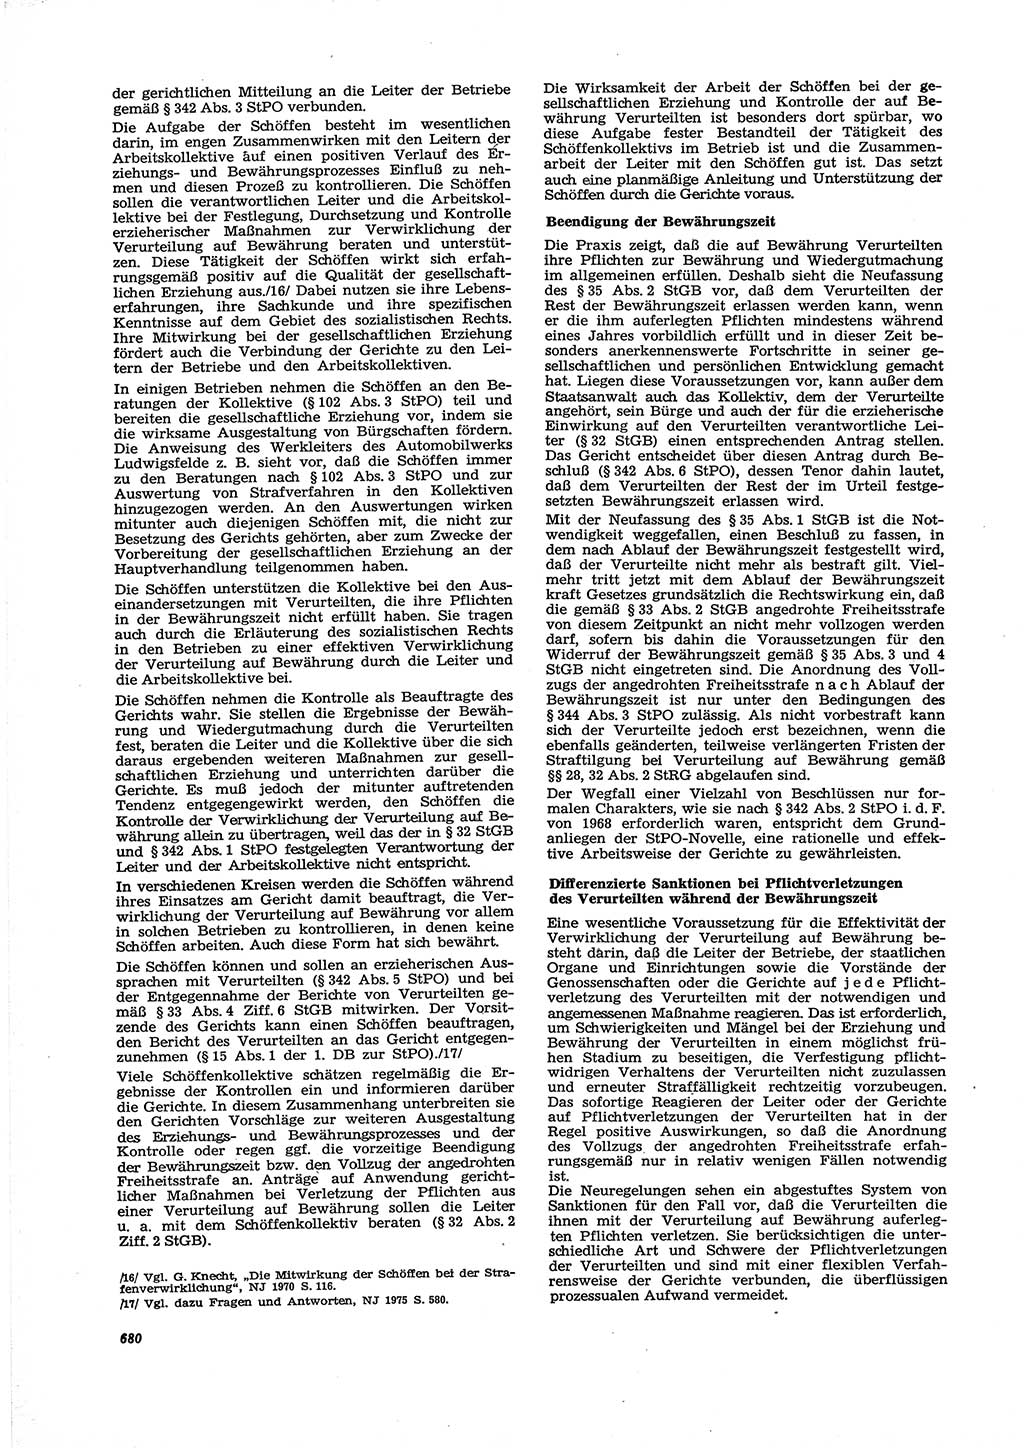 Neue Justiz (NJ), Zeitschrift für Recht und Rechtswissenschaft [Deutsche Demokratische Republik (DDR)], 29. Jahrgang 1975, Seite 680 (NJ DDR 1975, S. 680)